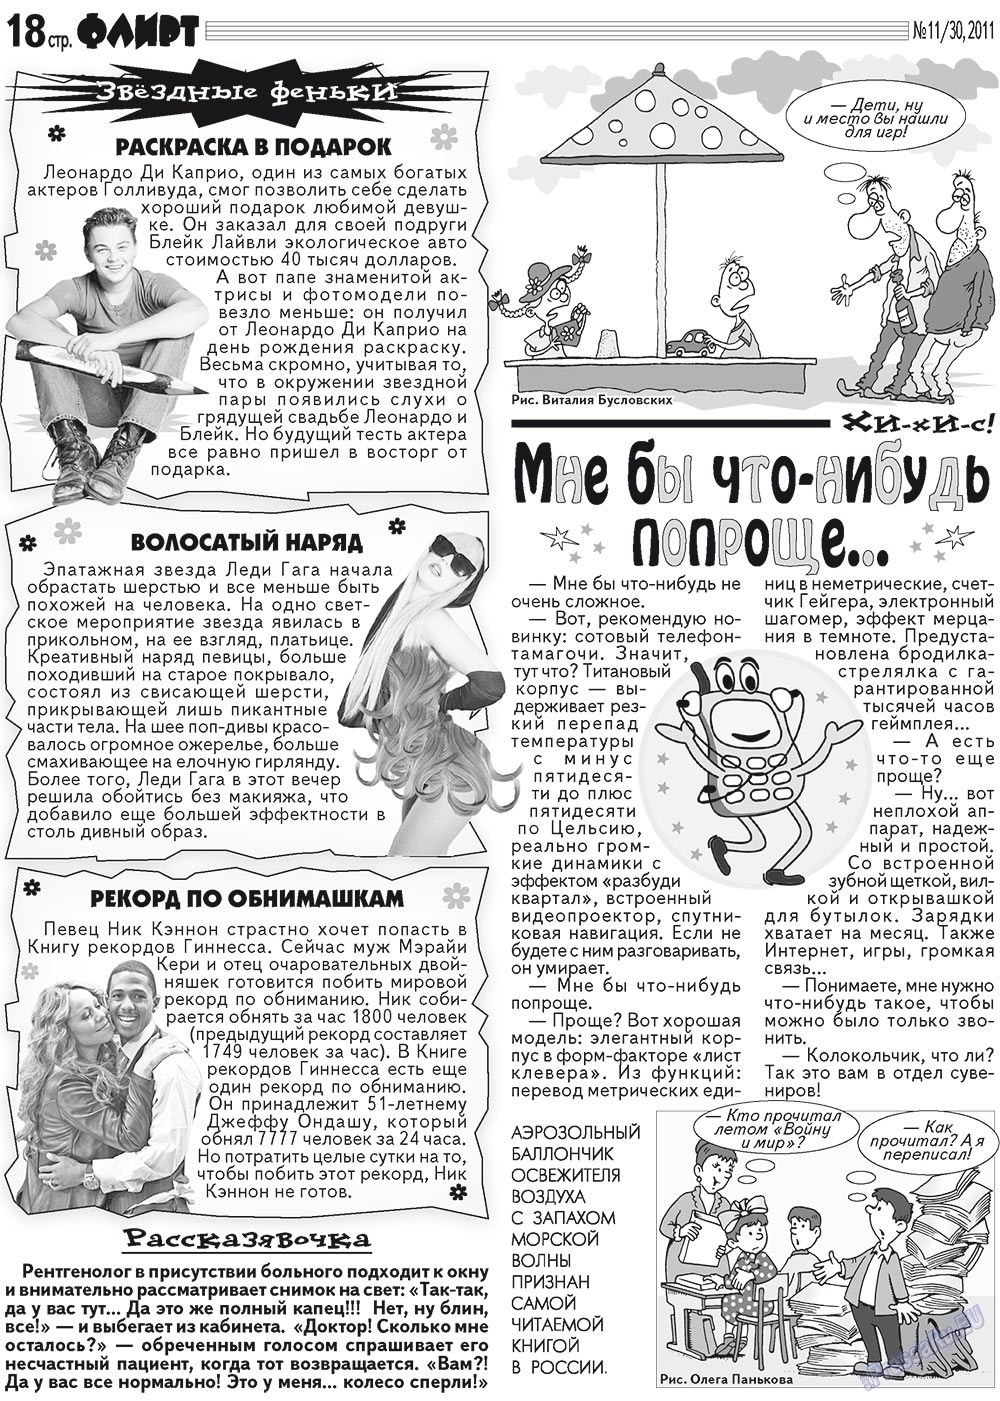 Флирт Журнал Сайт Москва